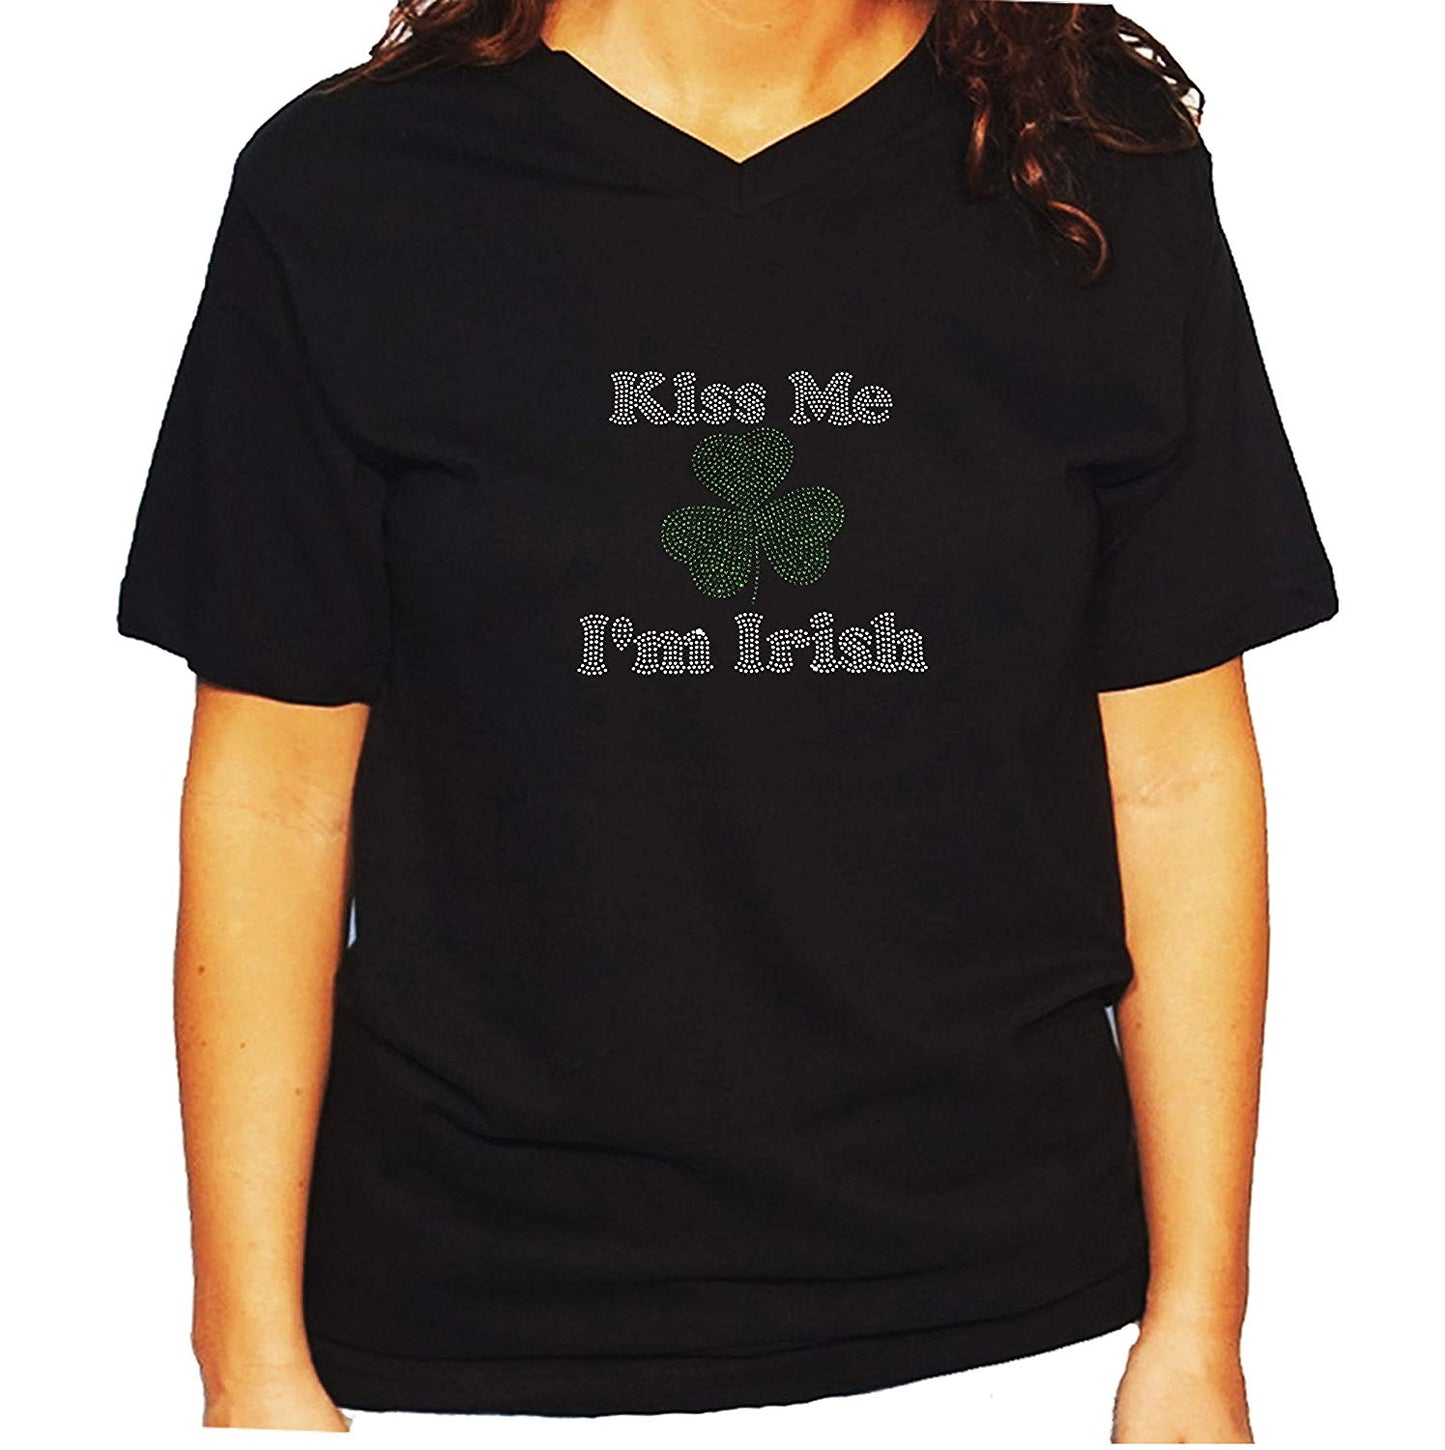 Women's / Unisex T-Shirt with Kiss Me I'm Irish in Rhinestones